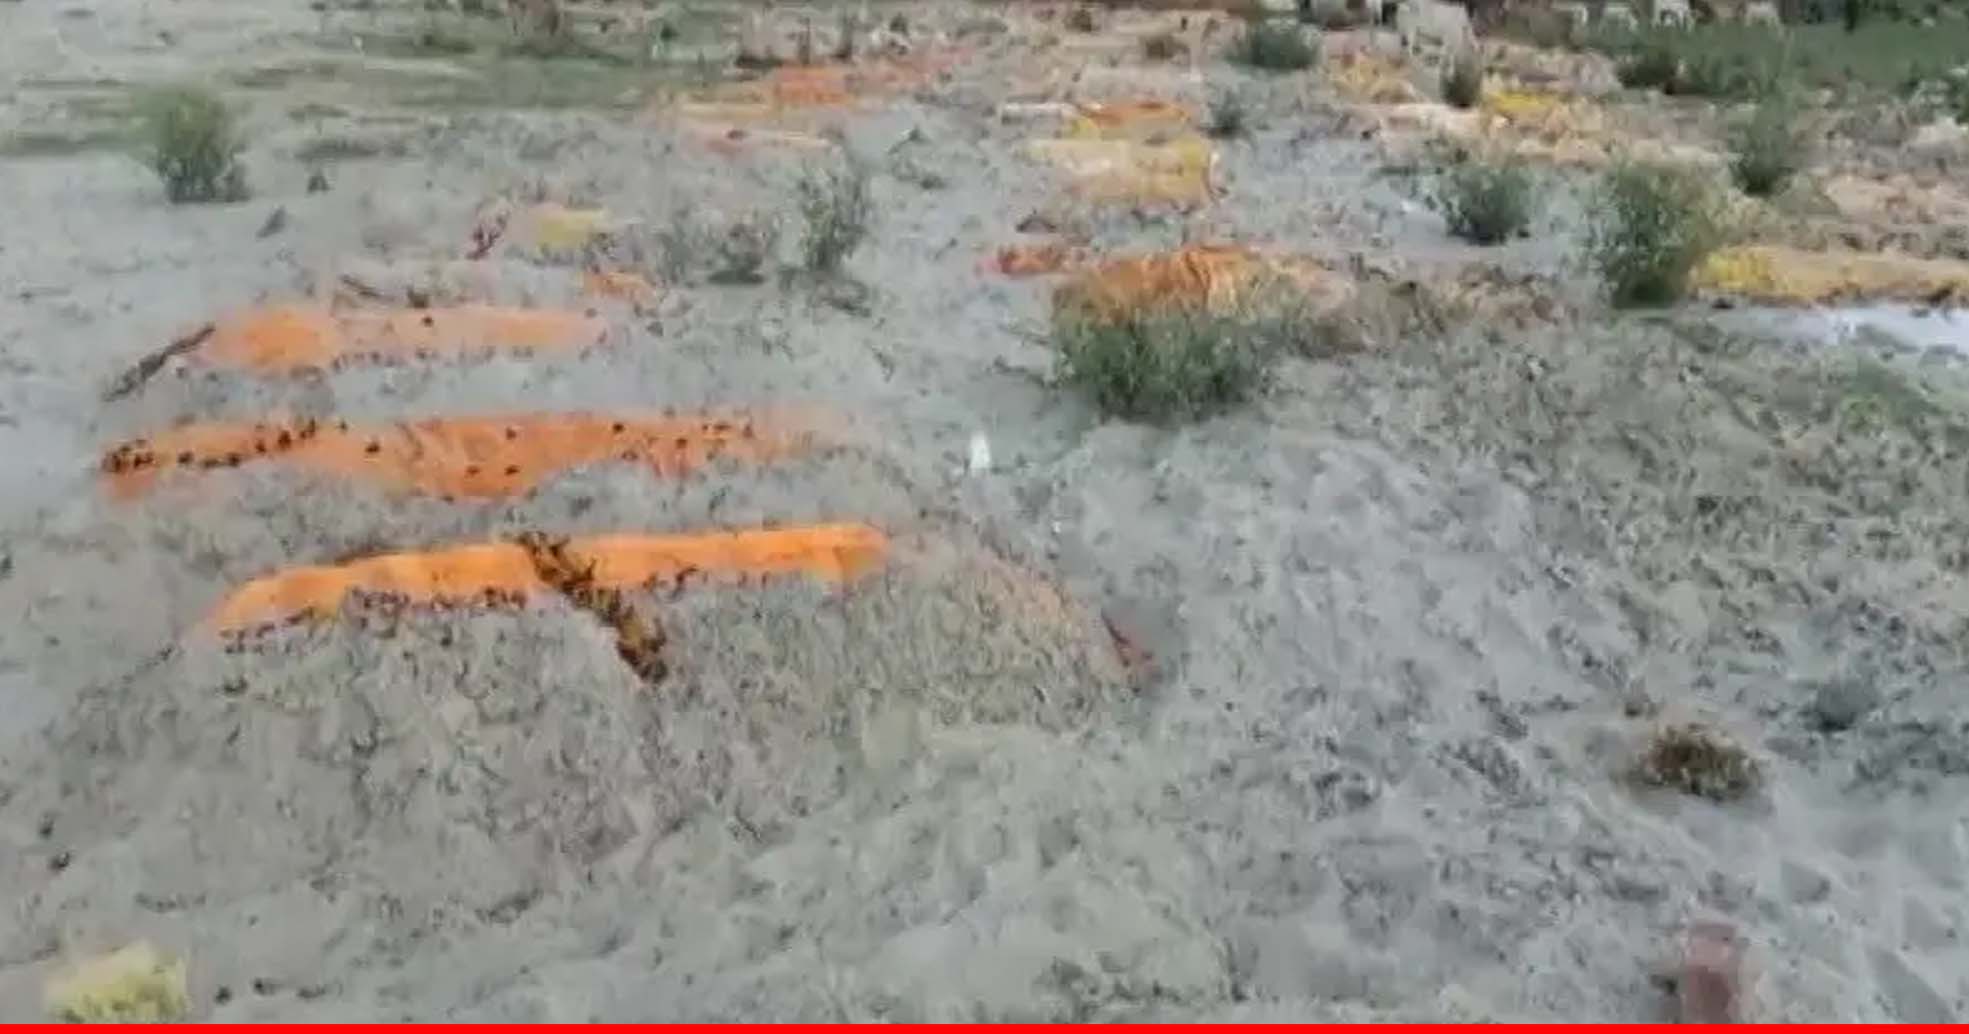 उन्नाव में गंगा नदी के पास रेत में दफन मिले कई शव, अन्‍य शवों की तलाश जारी, जांच में जुटा प्रशासन